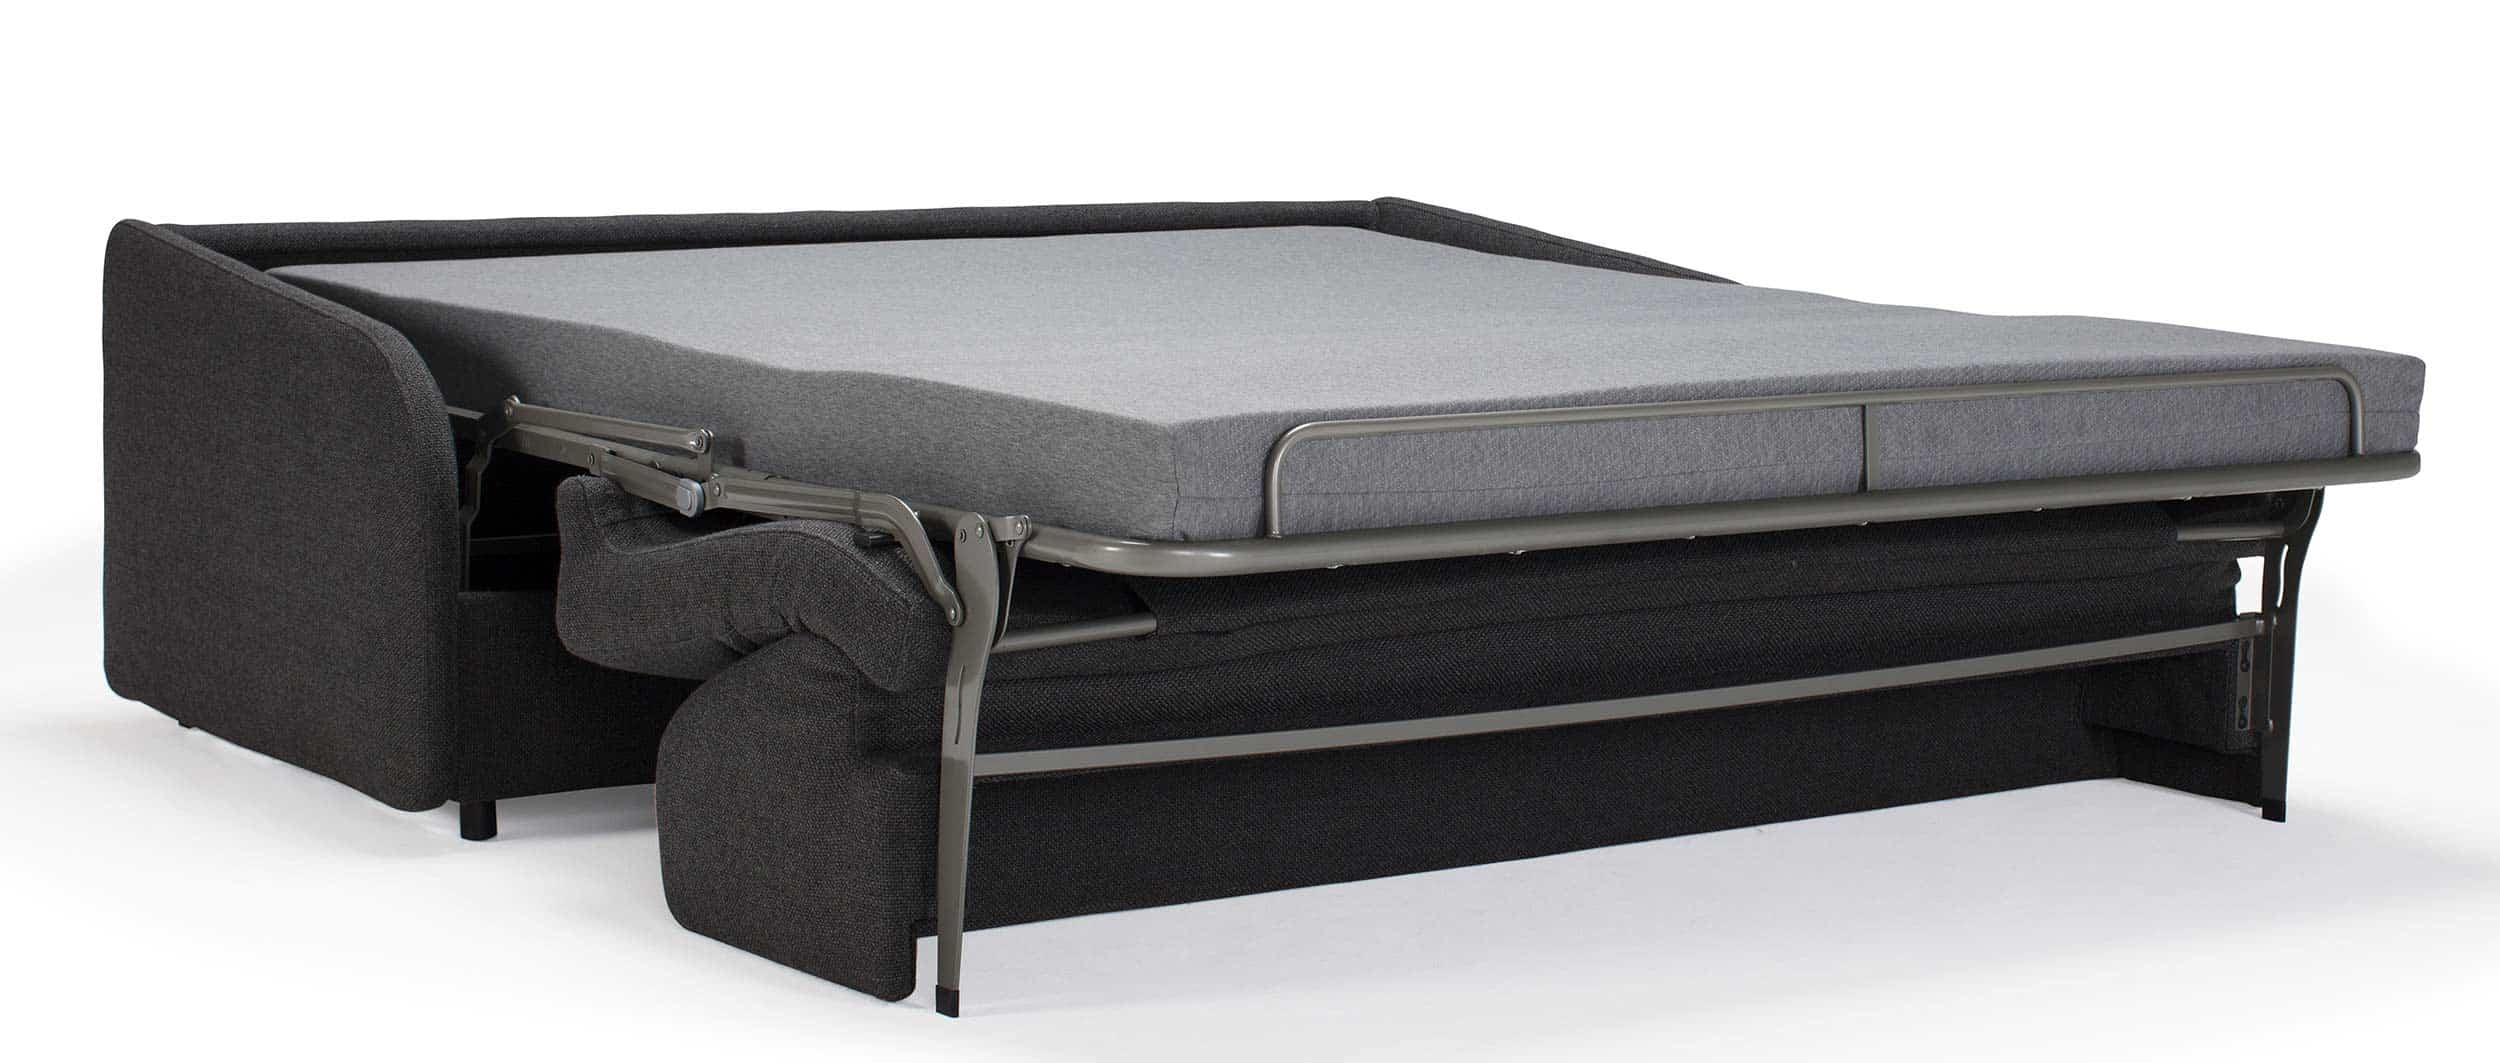 Sofabett EIVOR von Innovation, Schlafsofa für jeden Tag mit schmalen Armlehnen und Matratze, Bettfunktion